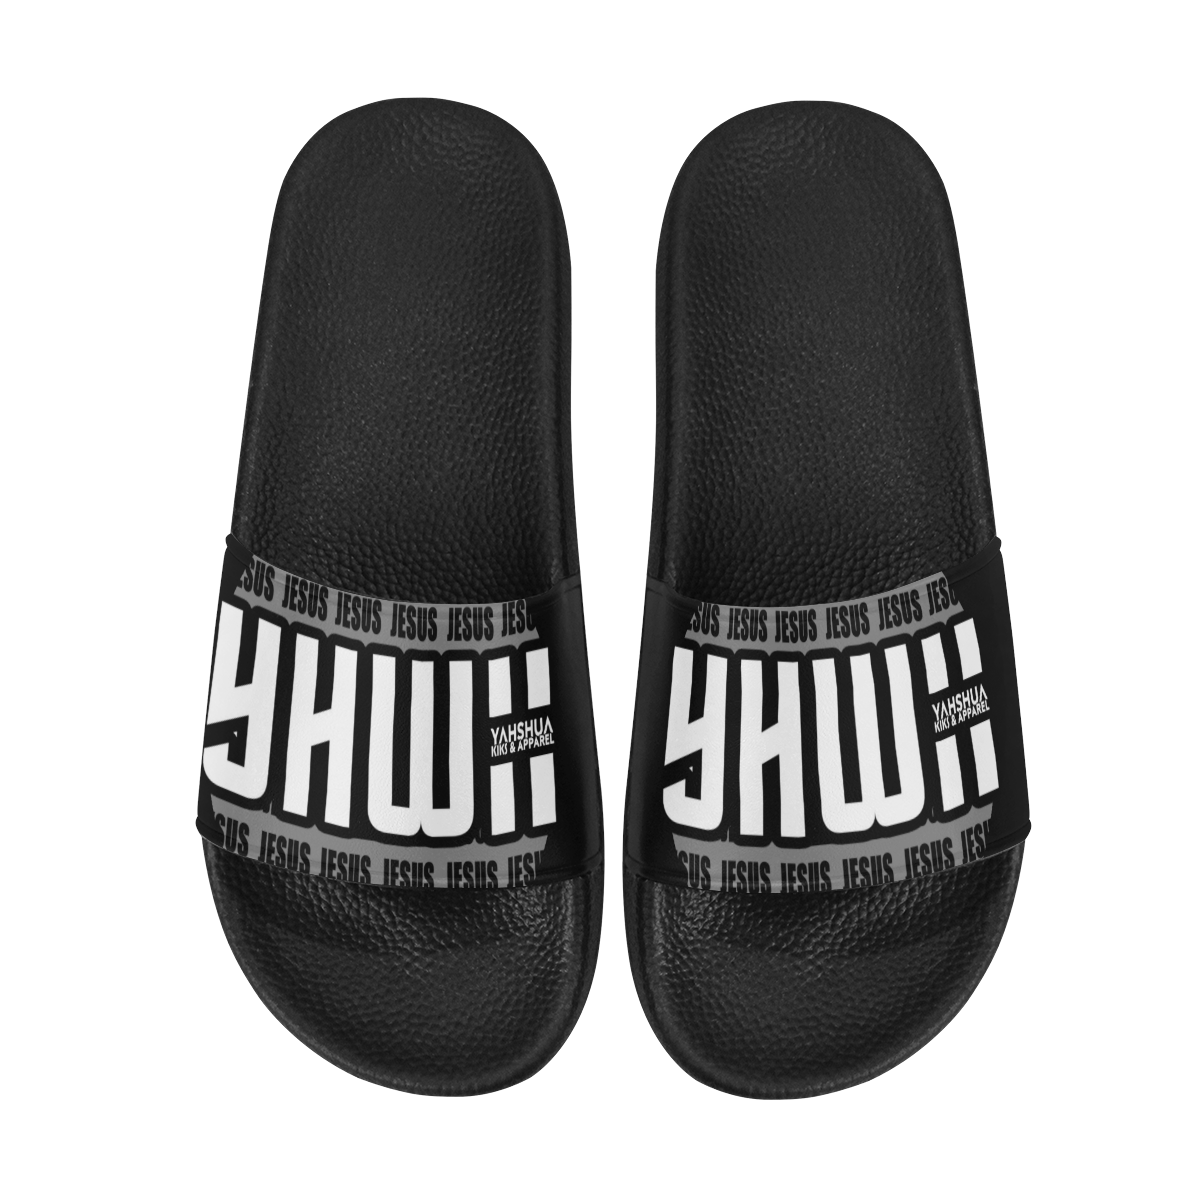 Black Women's Slide Sandals (Model 057)